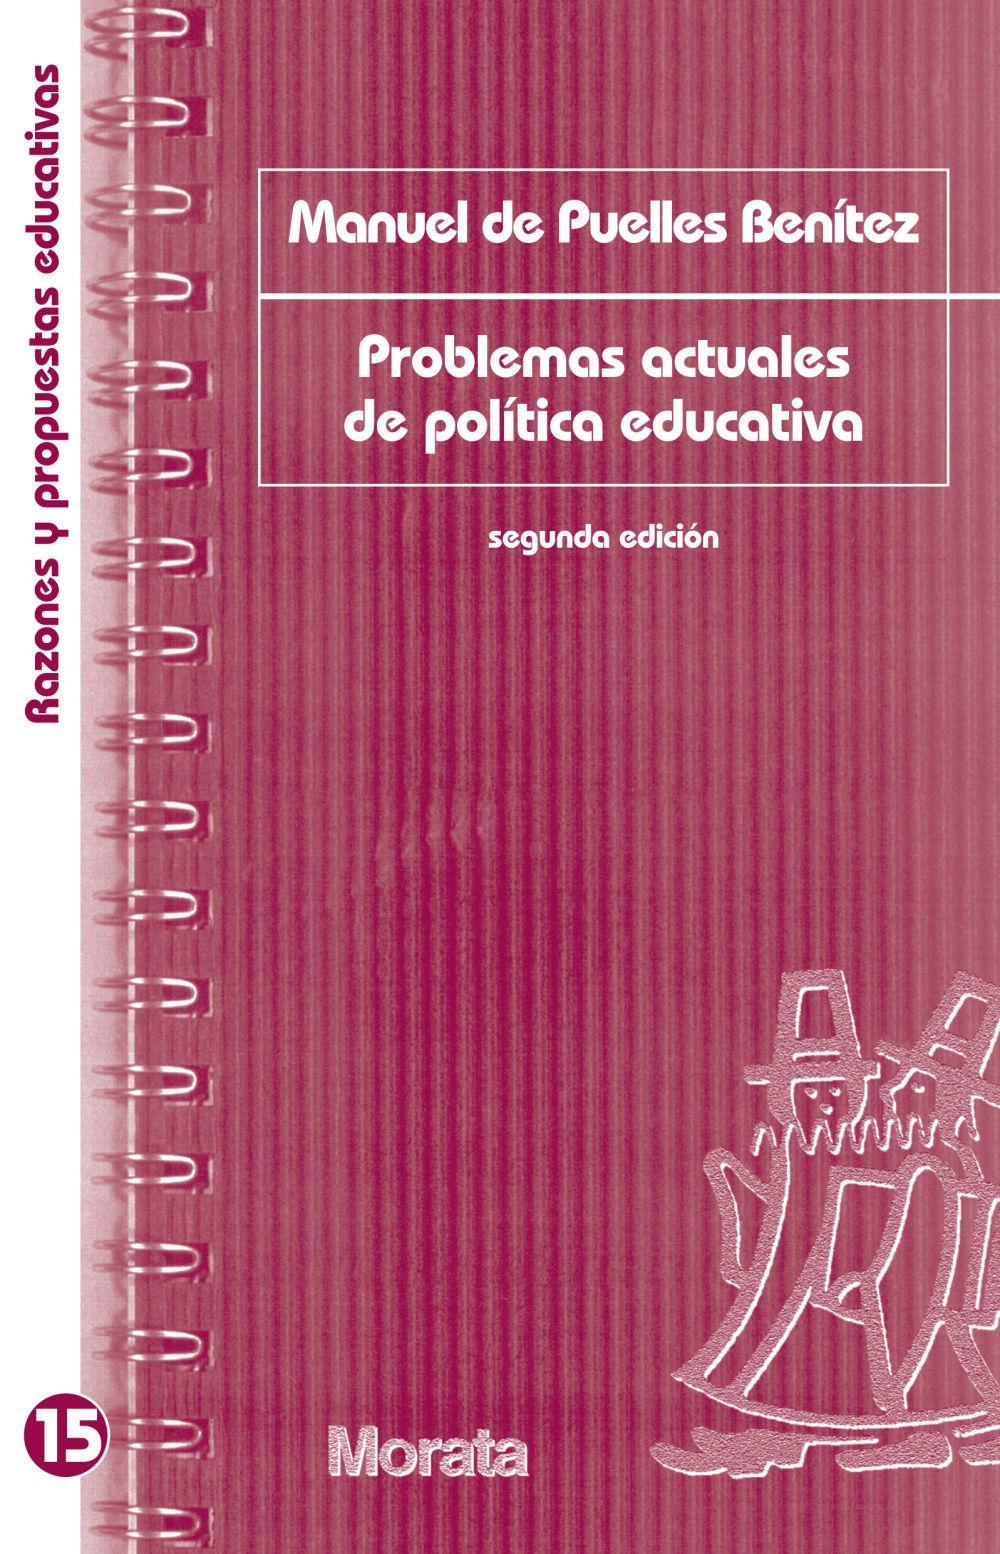 Problemas actuales de política educativa  Manuel de Puelles Benítez  Taschenbuch  Spanisch  2006 - Puelles Benítez, Manuel de